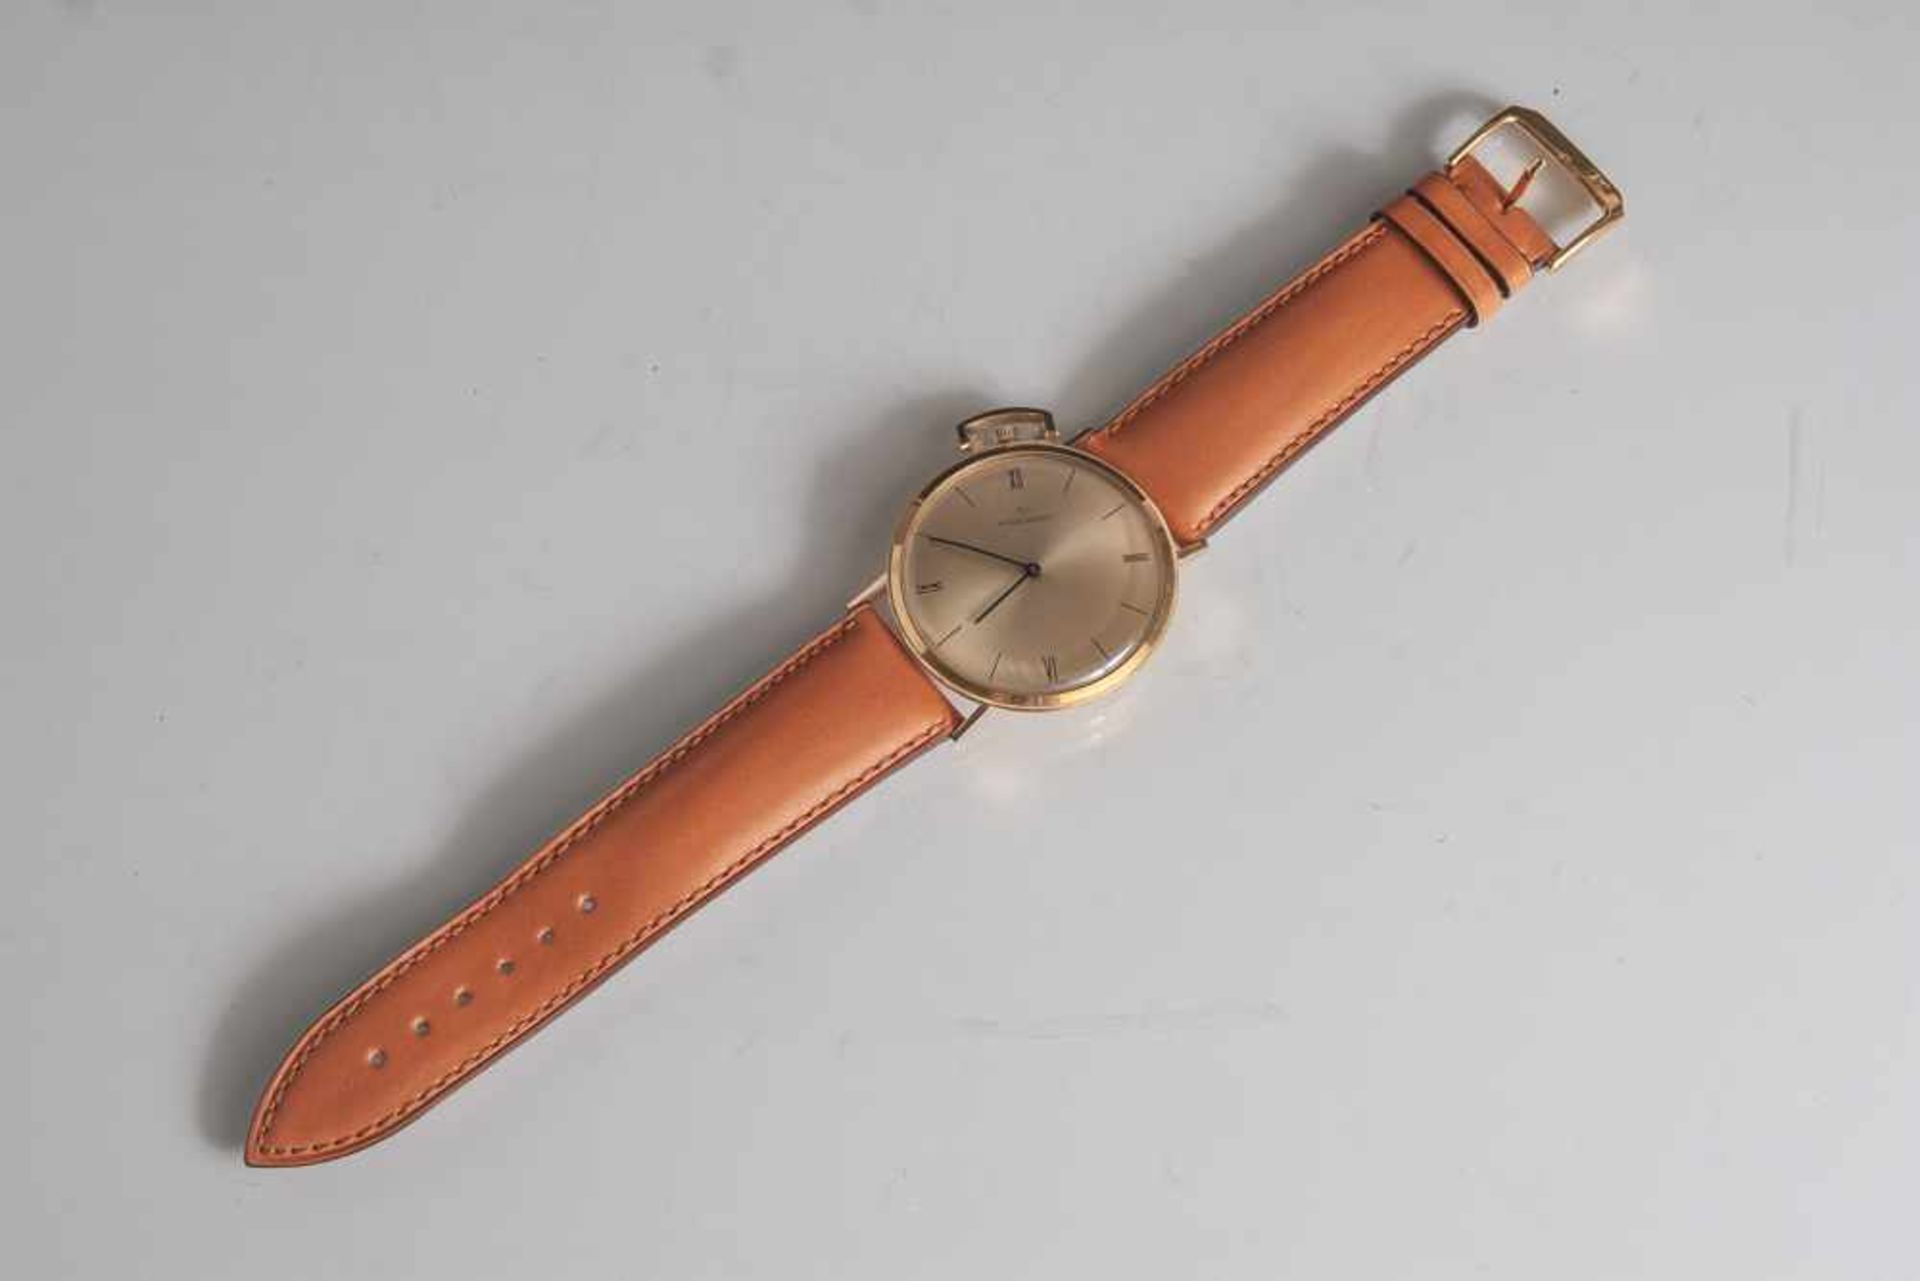 Herrenarmbanduhr, Movado, Gelbgold 750, zur Armbanduhr umgearbeitete Taschenuhr. Goldfarbenes